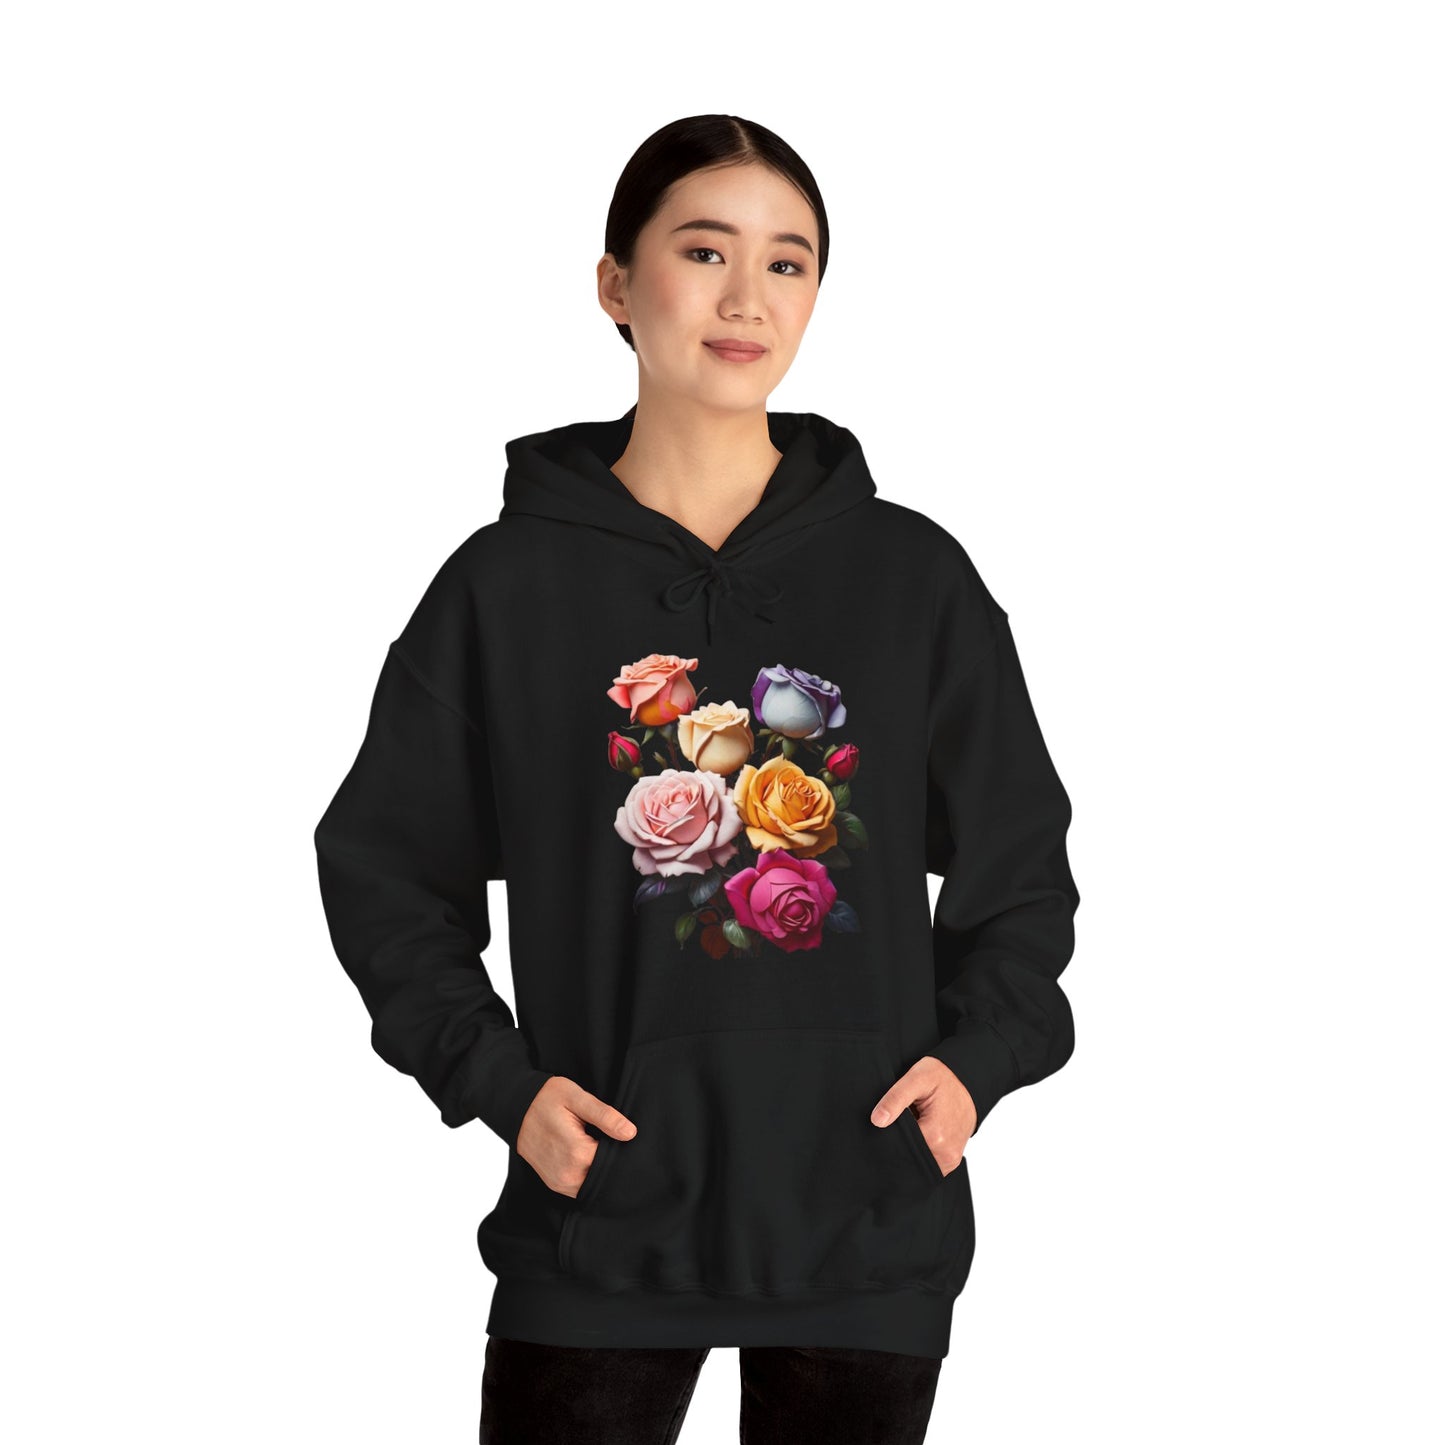 Multicoloured Roses - Unisex Hooded Sweatshirt